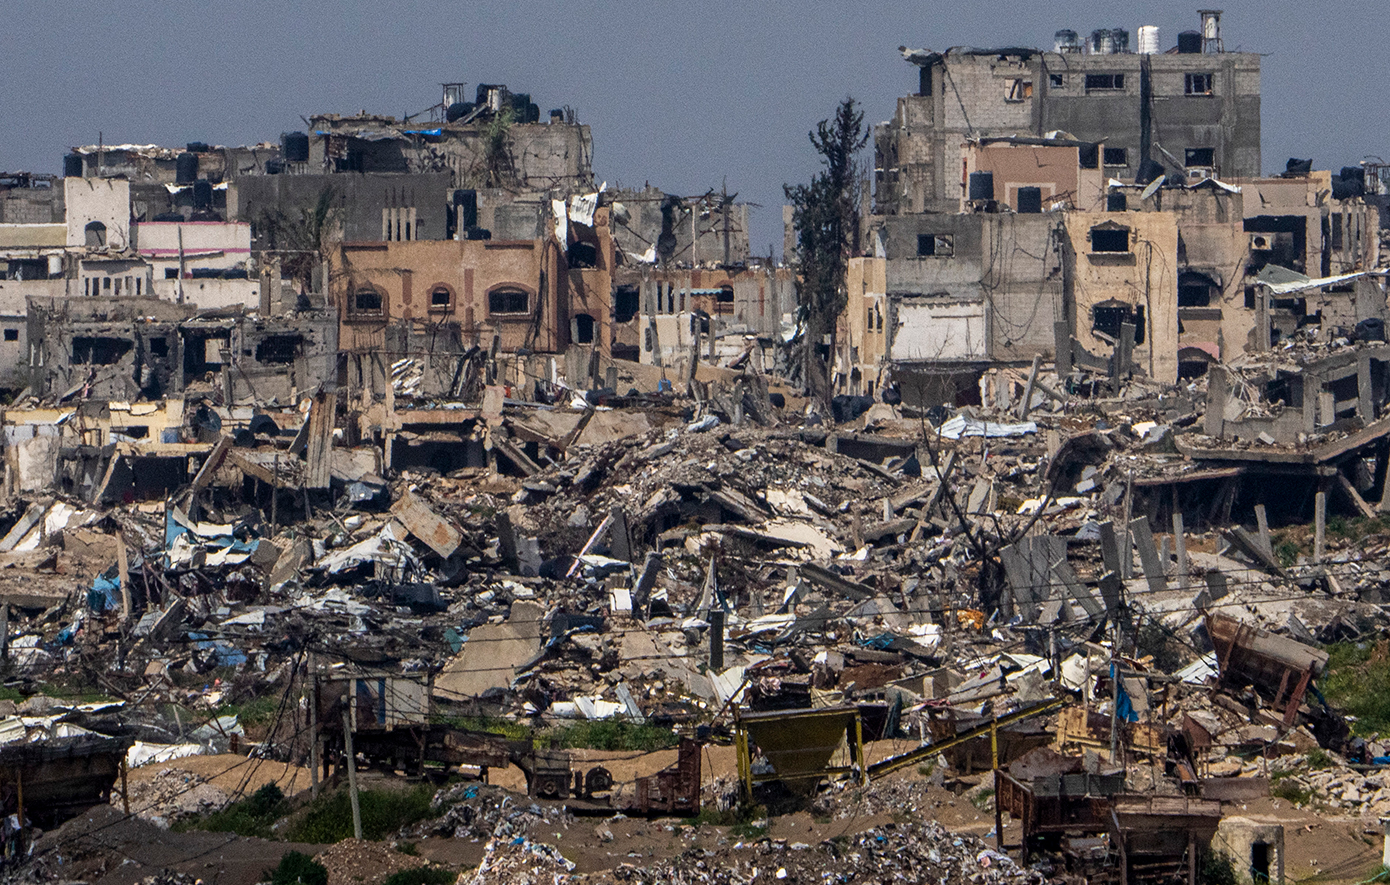 Συνεχίζεται το σφυροκόπημα στη Γάζα – Oι ΗΠΑ απειλούν να φρενάρουν τη στρατιωτική βοήθεια στο Ισραήλ αν μπει στη Ράφα